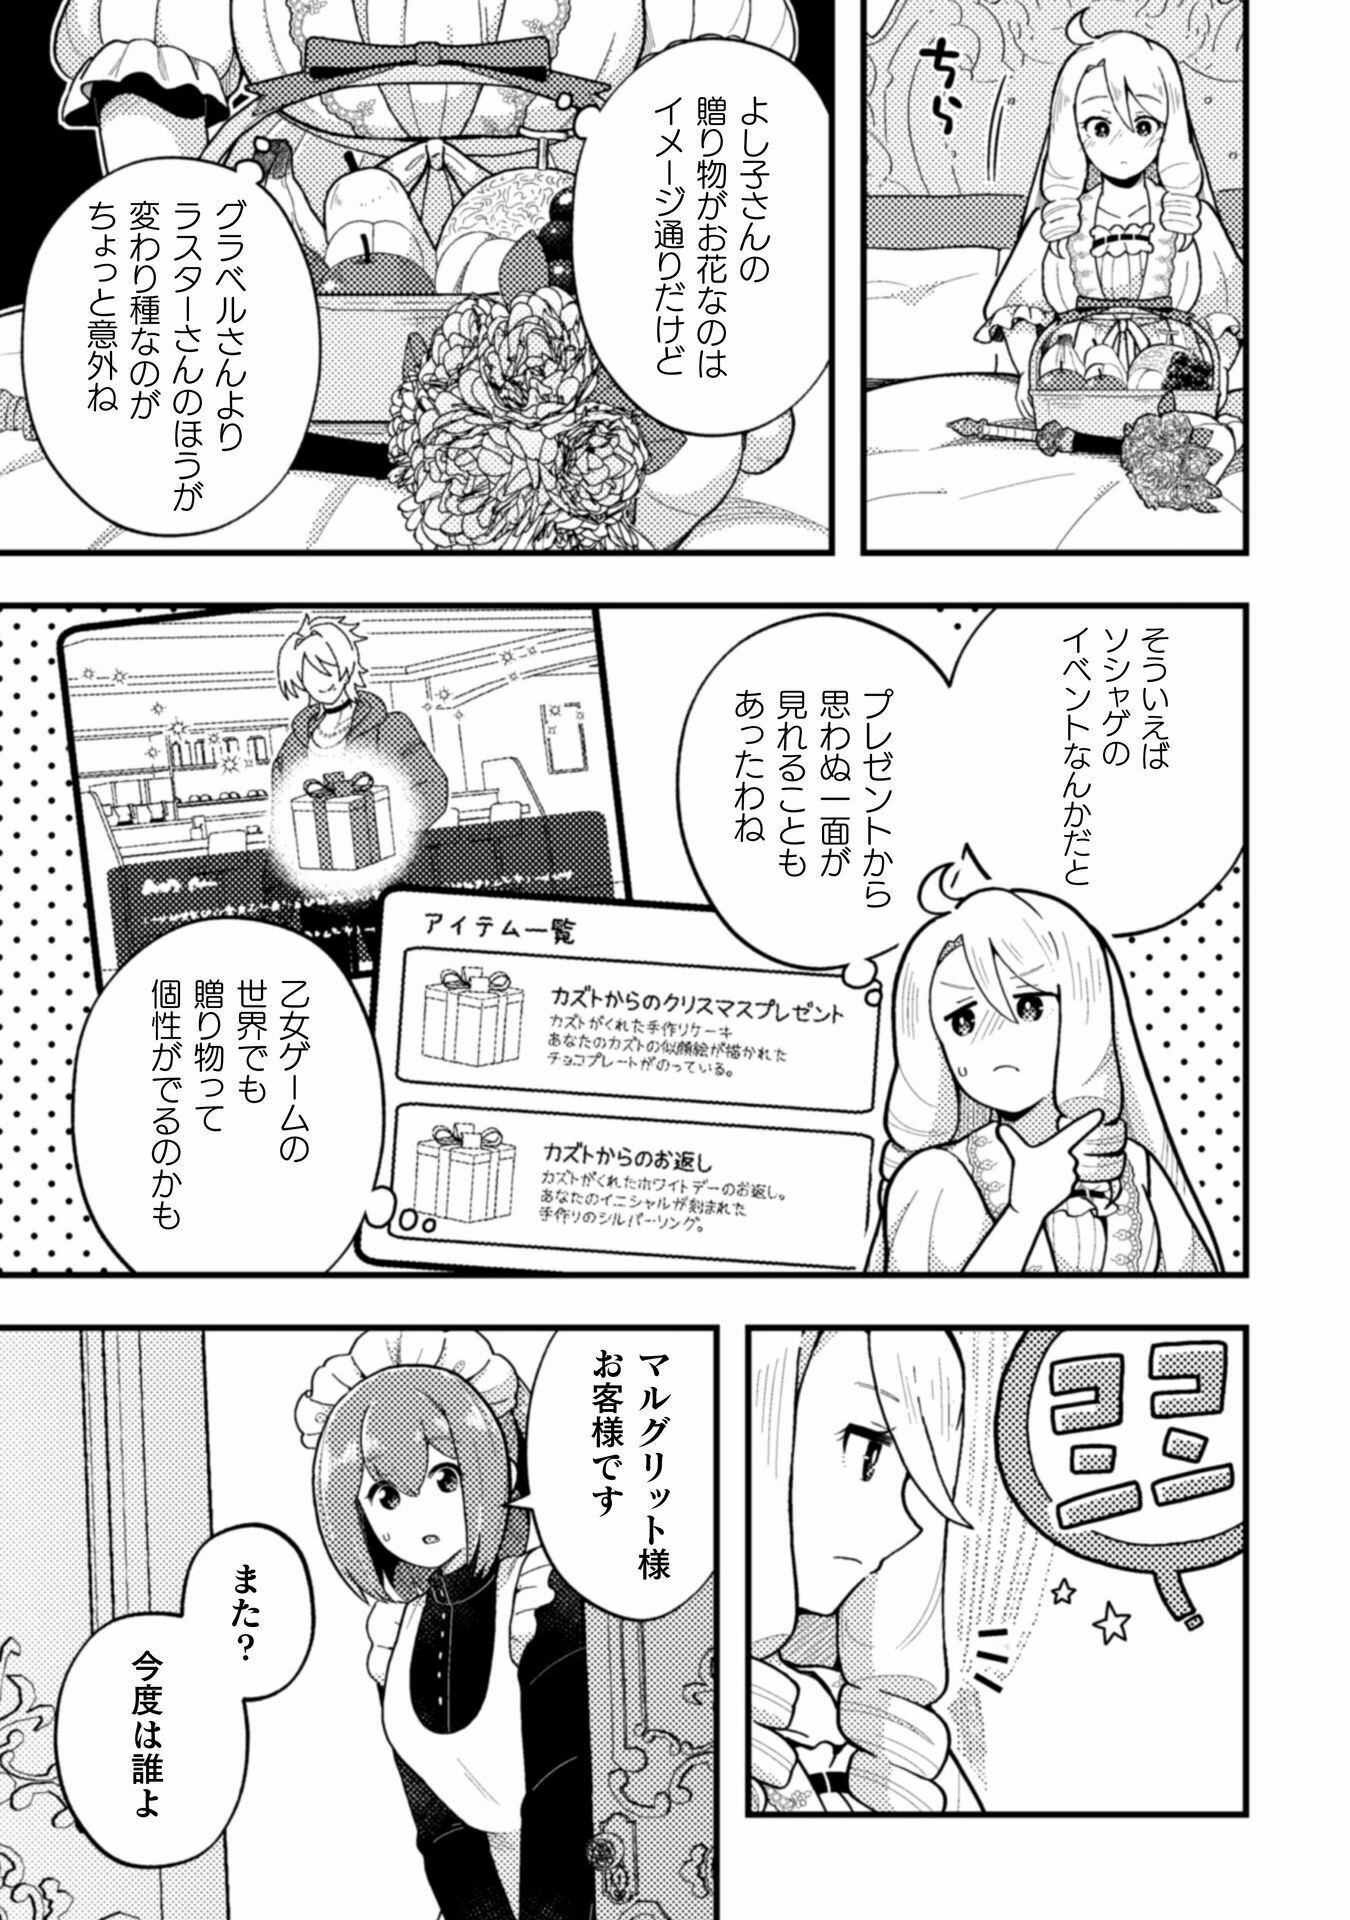 Otome Game no Akuyaku Reijou ni Tensei shitakedo Follower ga Fukyoushiteta Chisiki shikanai - Chapter 20 - Page 9